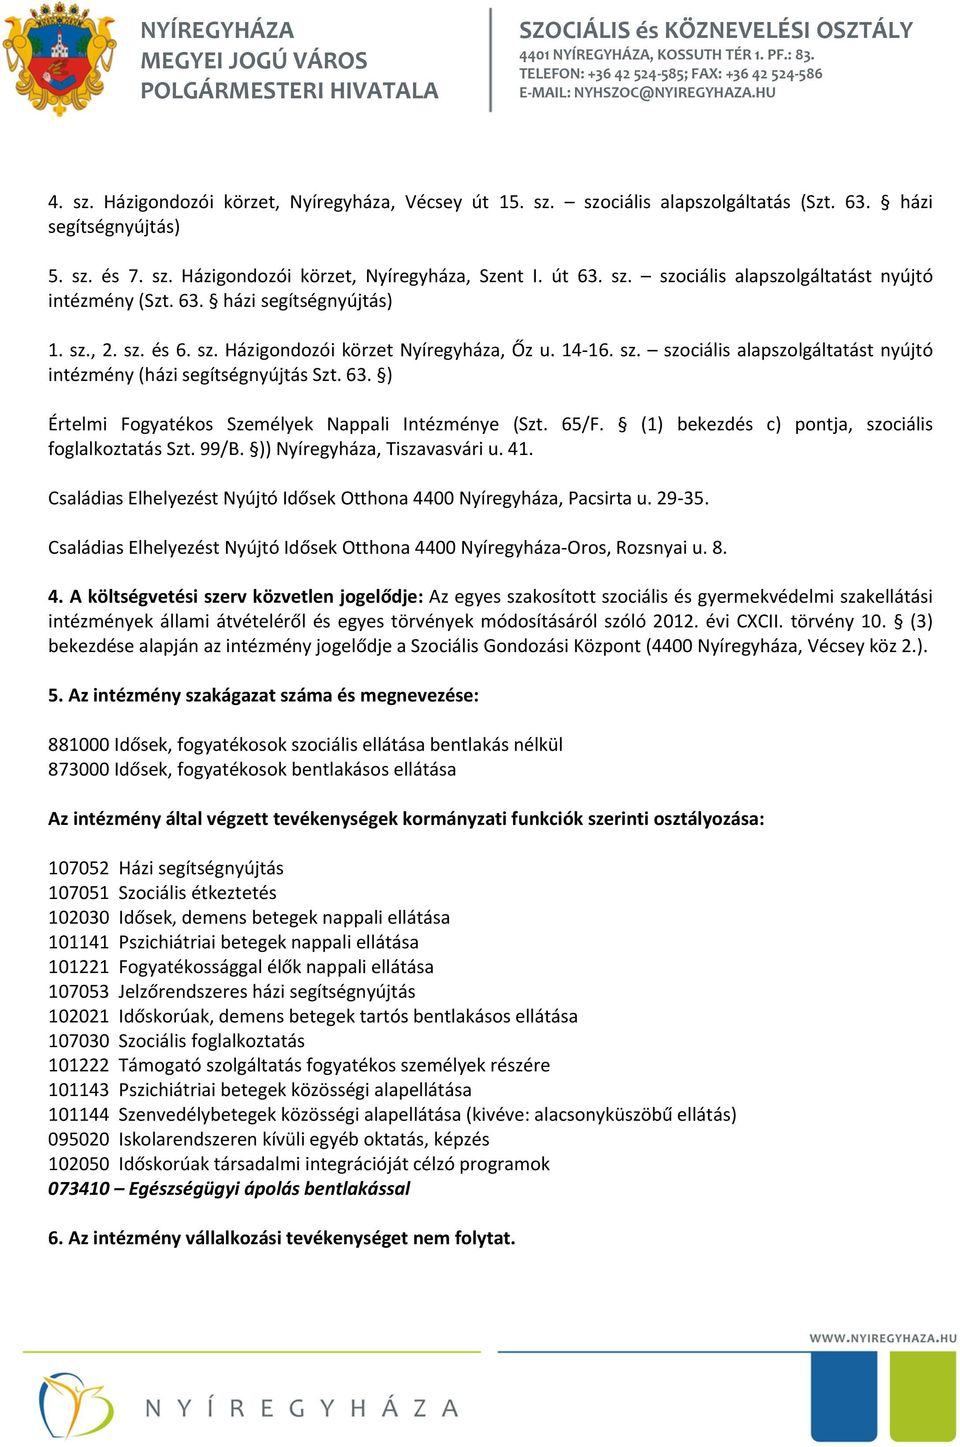 ) Értelmi Fogyatékos Személyek Nappali Intézménye (Szt. 65/F. (1) bekezdés c) pontja, szociális foglalkoztatás Szt. 99/B. )) Nyíregyháza, Tiszavasvári u. 41.